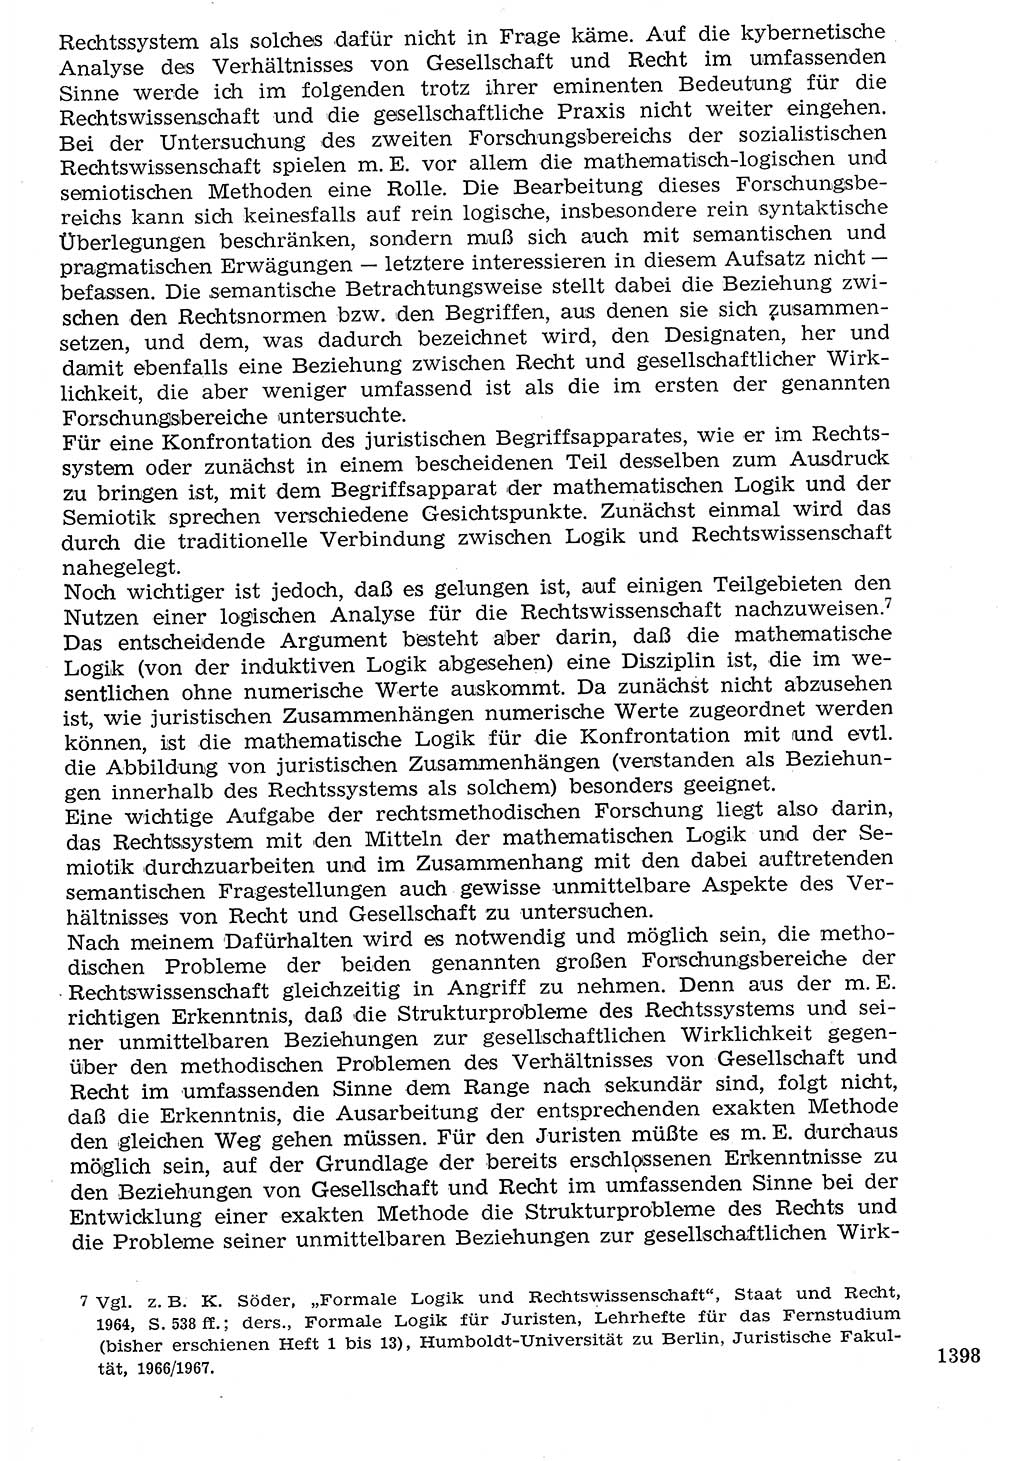 Staat und Recht (StuR), 17. Jahrgang [Deutsche Demokratische Republik (DDR)] 1968, Seite 1398 (StuR DDR 1968, S. 1398)